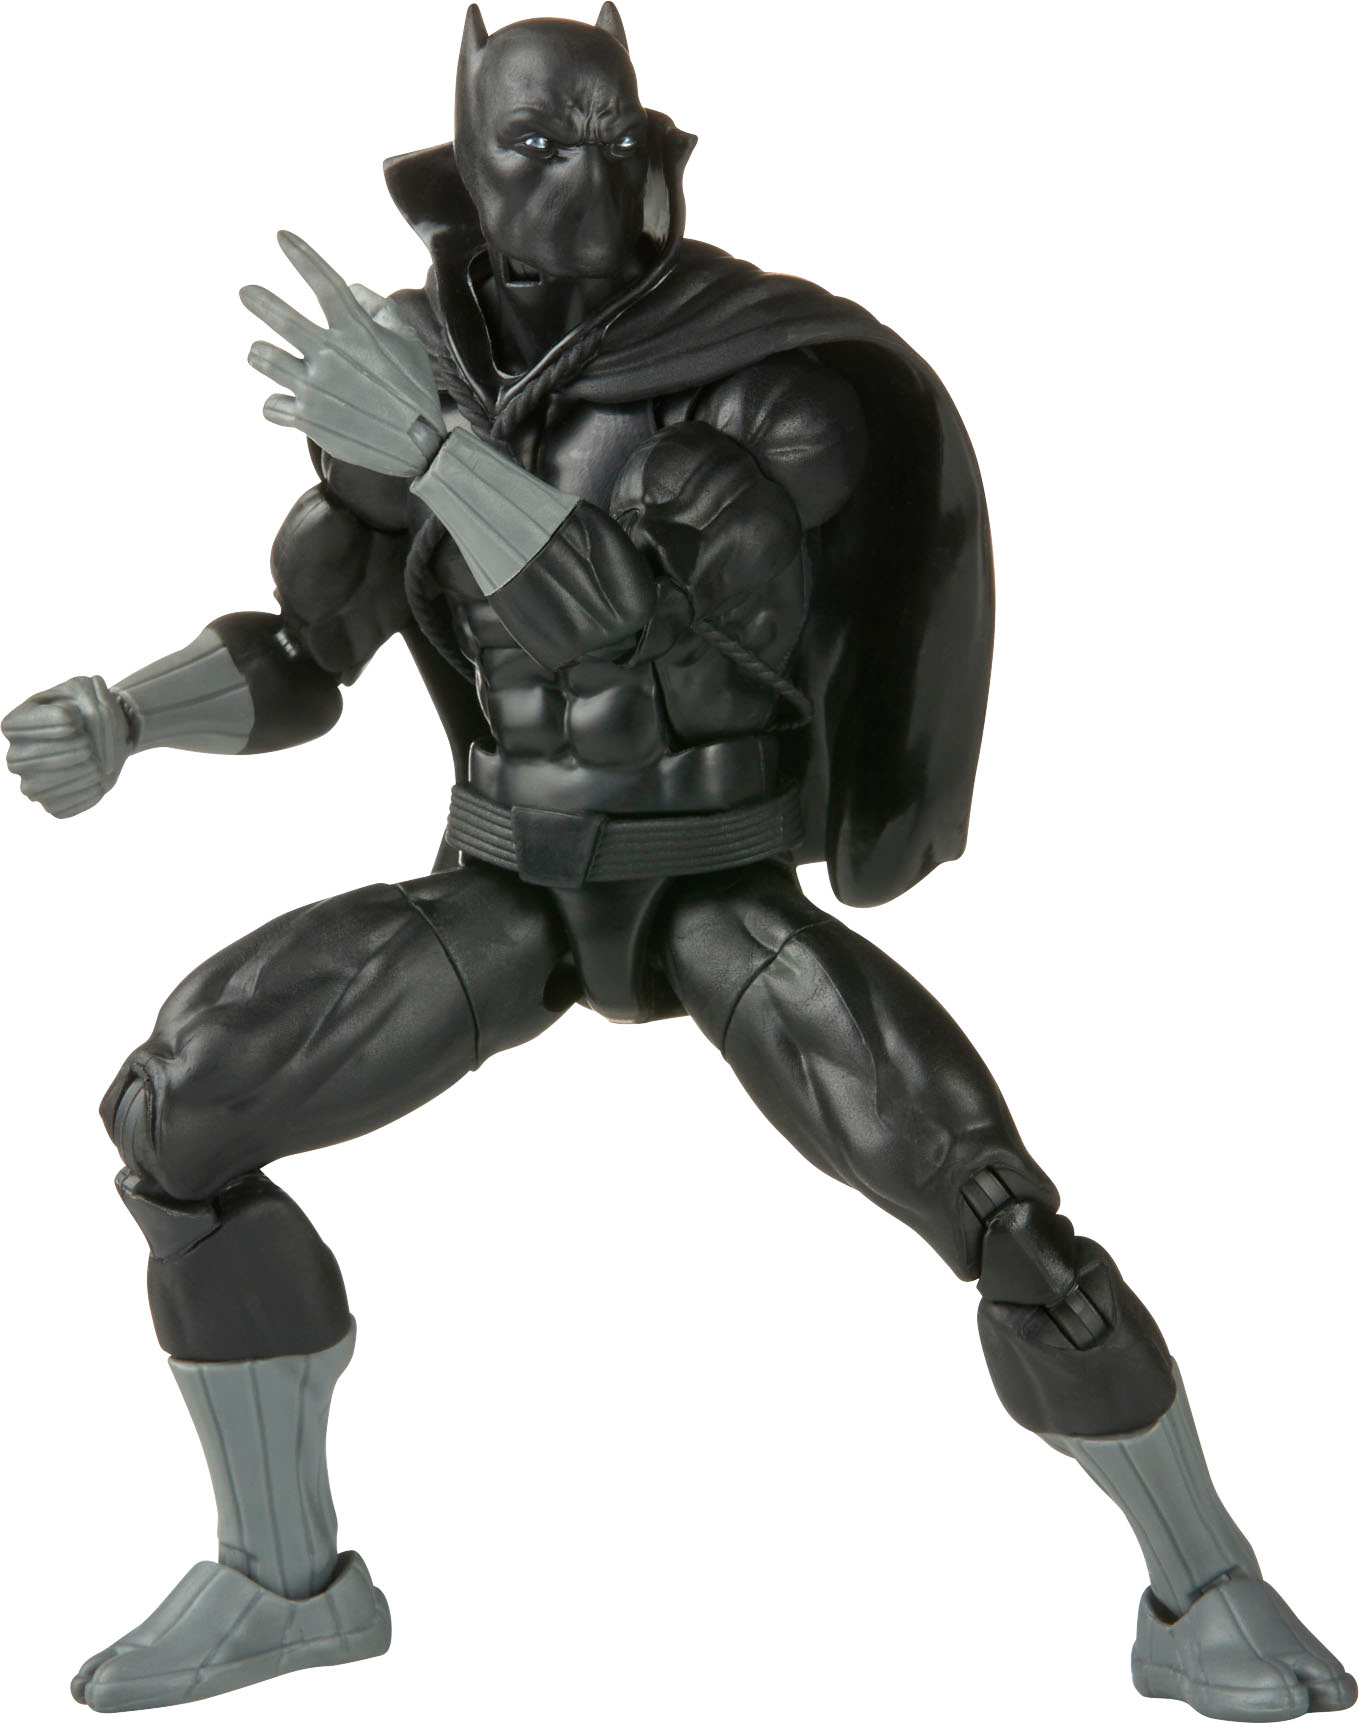 Best Buy: Marvel Legends Series Black Panther F3679